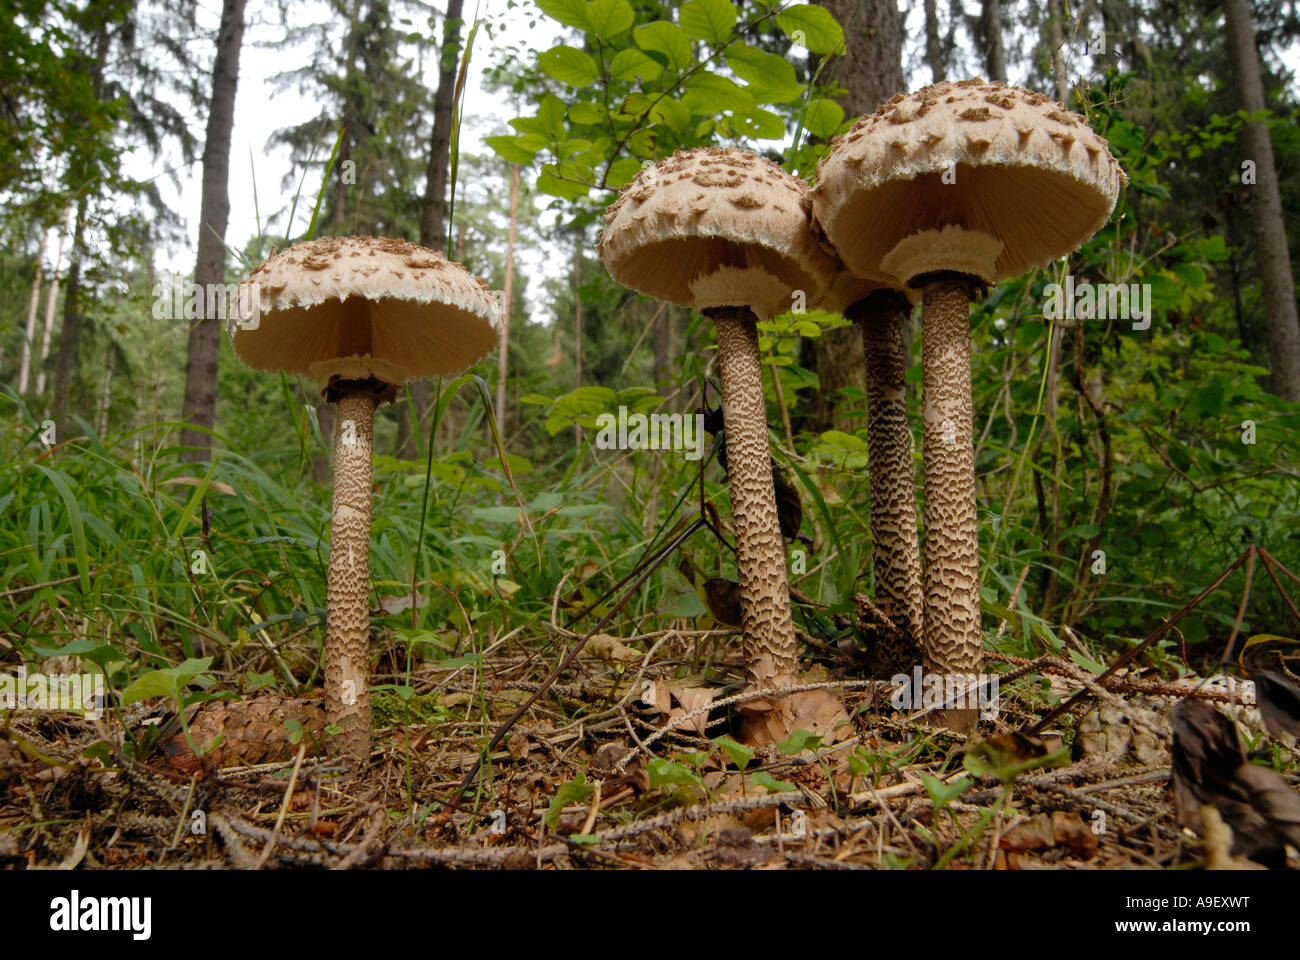 Funghi parasole immagini e fotografie stock ad alta risoluzione - Alamy